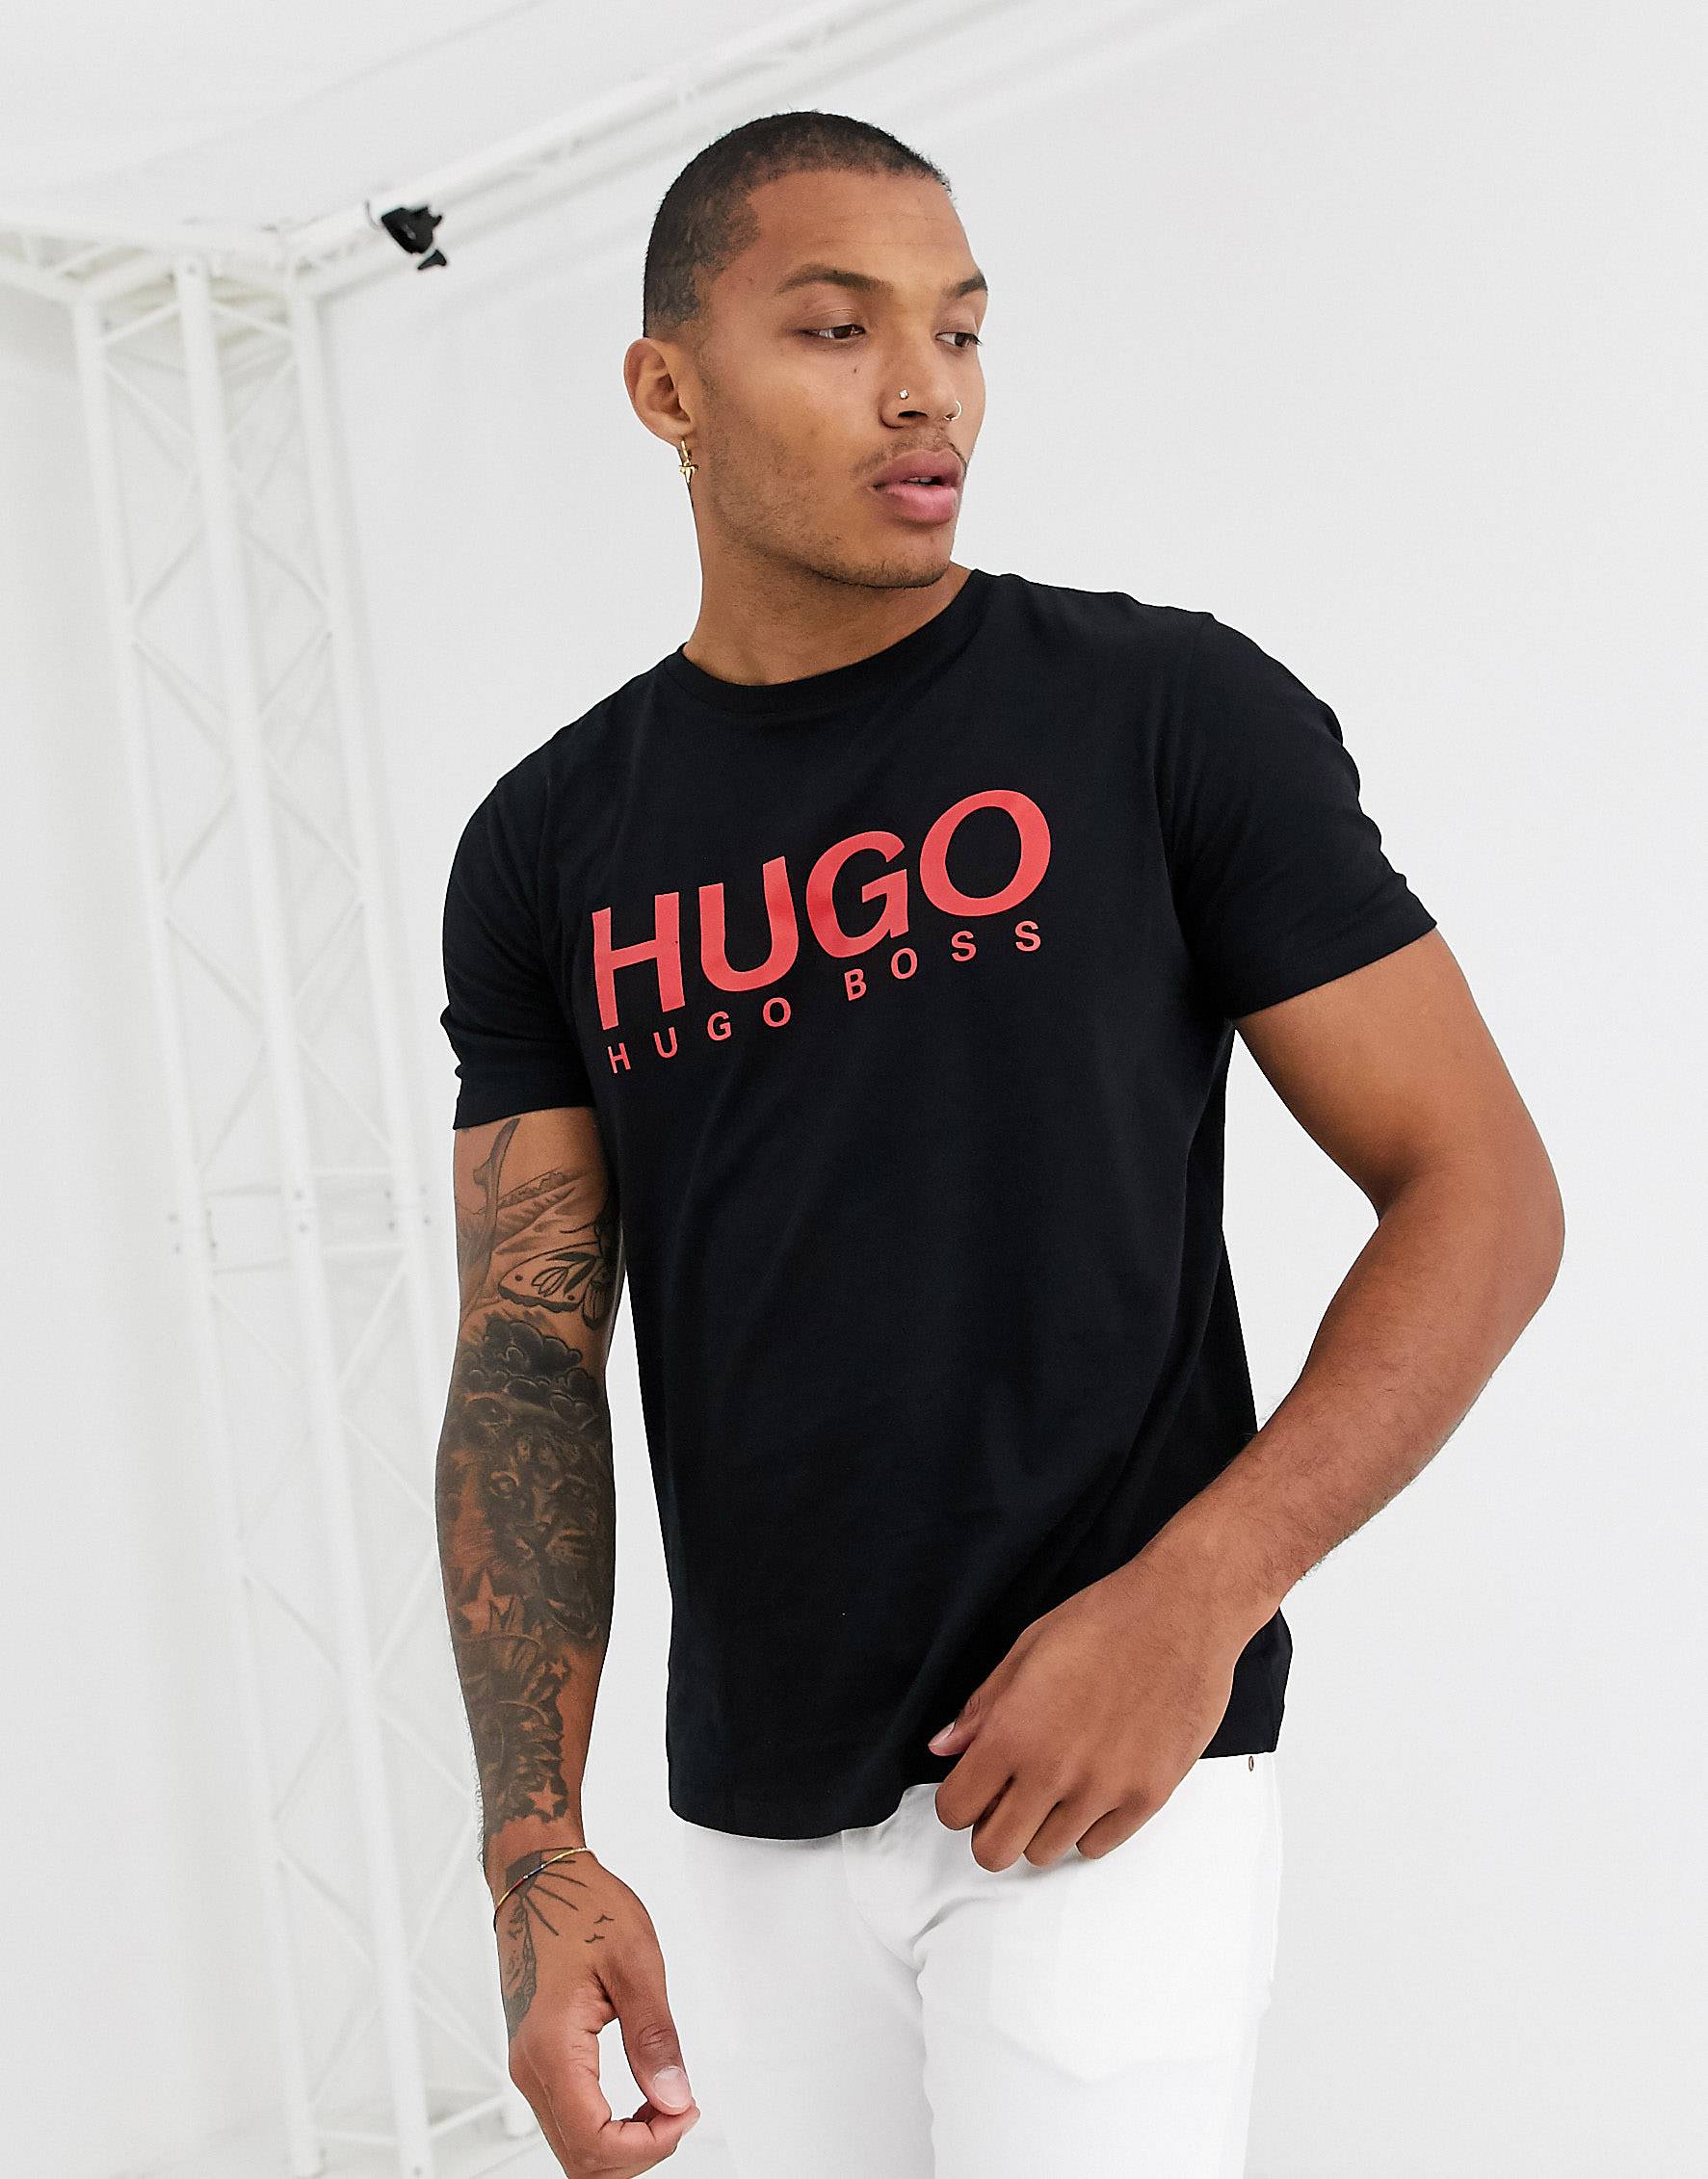 Купить футболку hugo. Hugo Boss футболка черная. Майка Хуго босс черная. Футболка Hugo Boss мужская черная. Черная футболка Хуго.